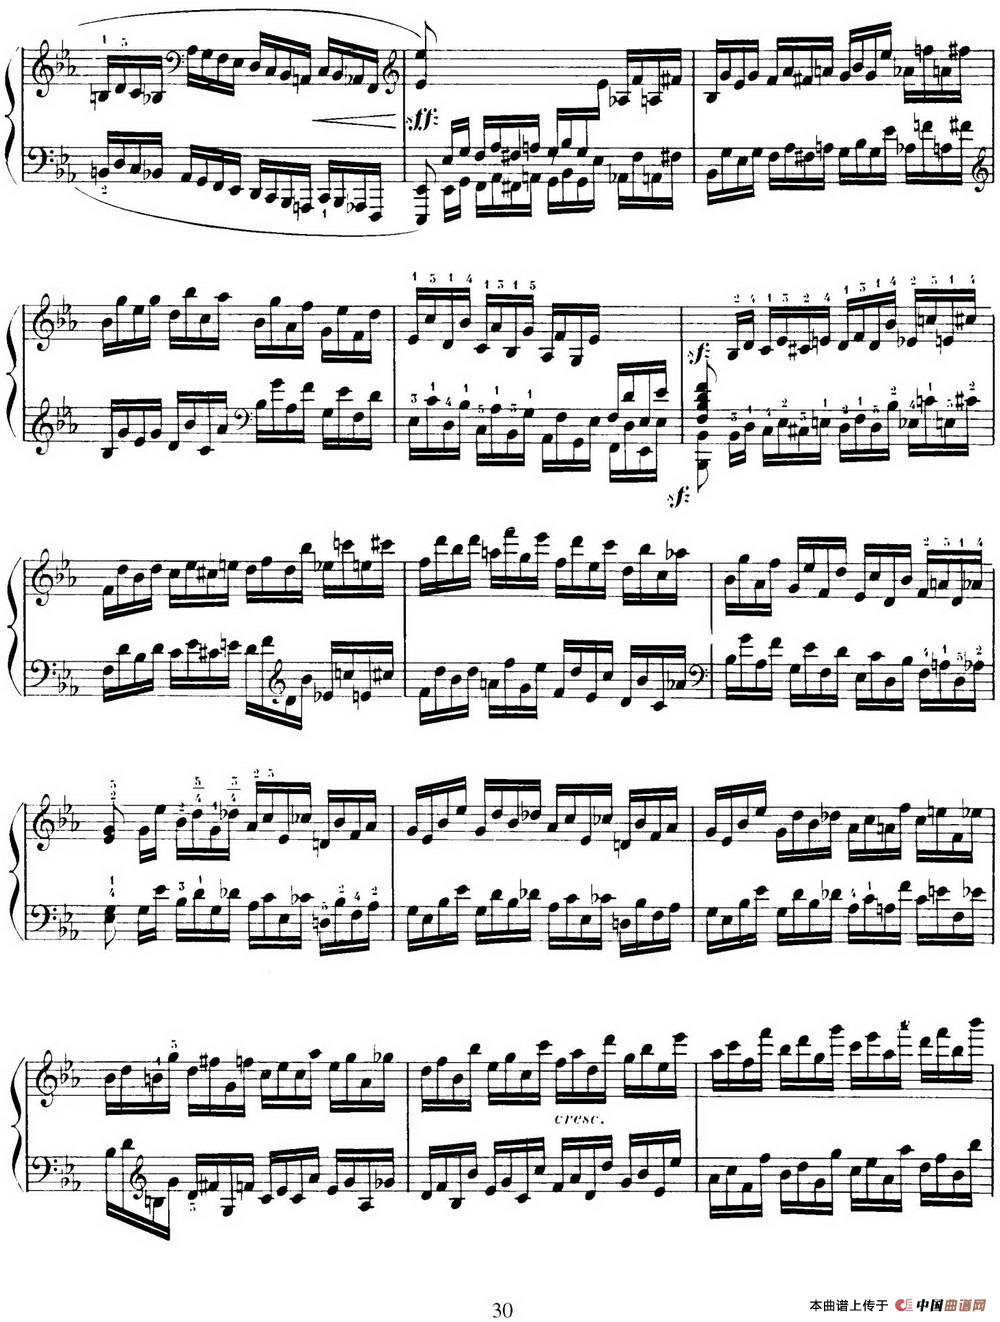 15 Etudes de Virtuosité Op.72 No.7（十五首钢琴练习曲之七）(1)_030.jpg